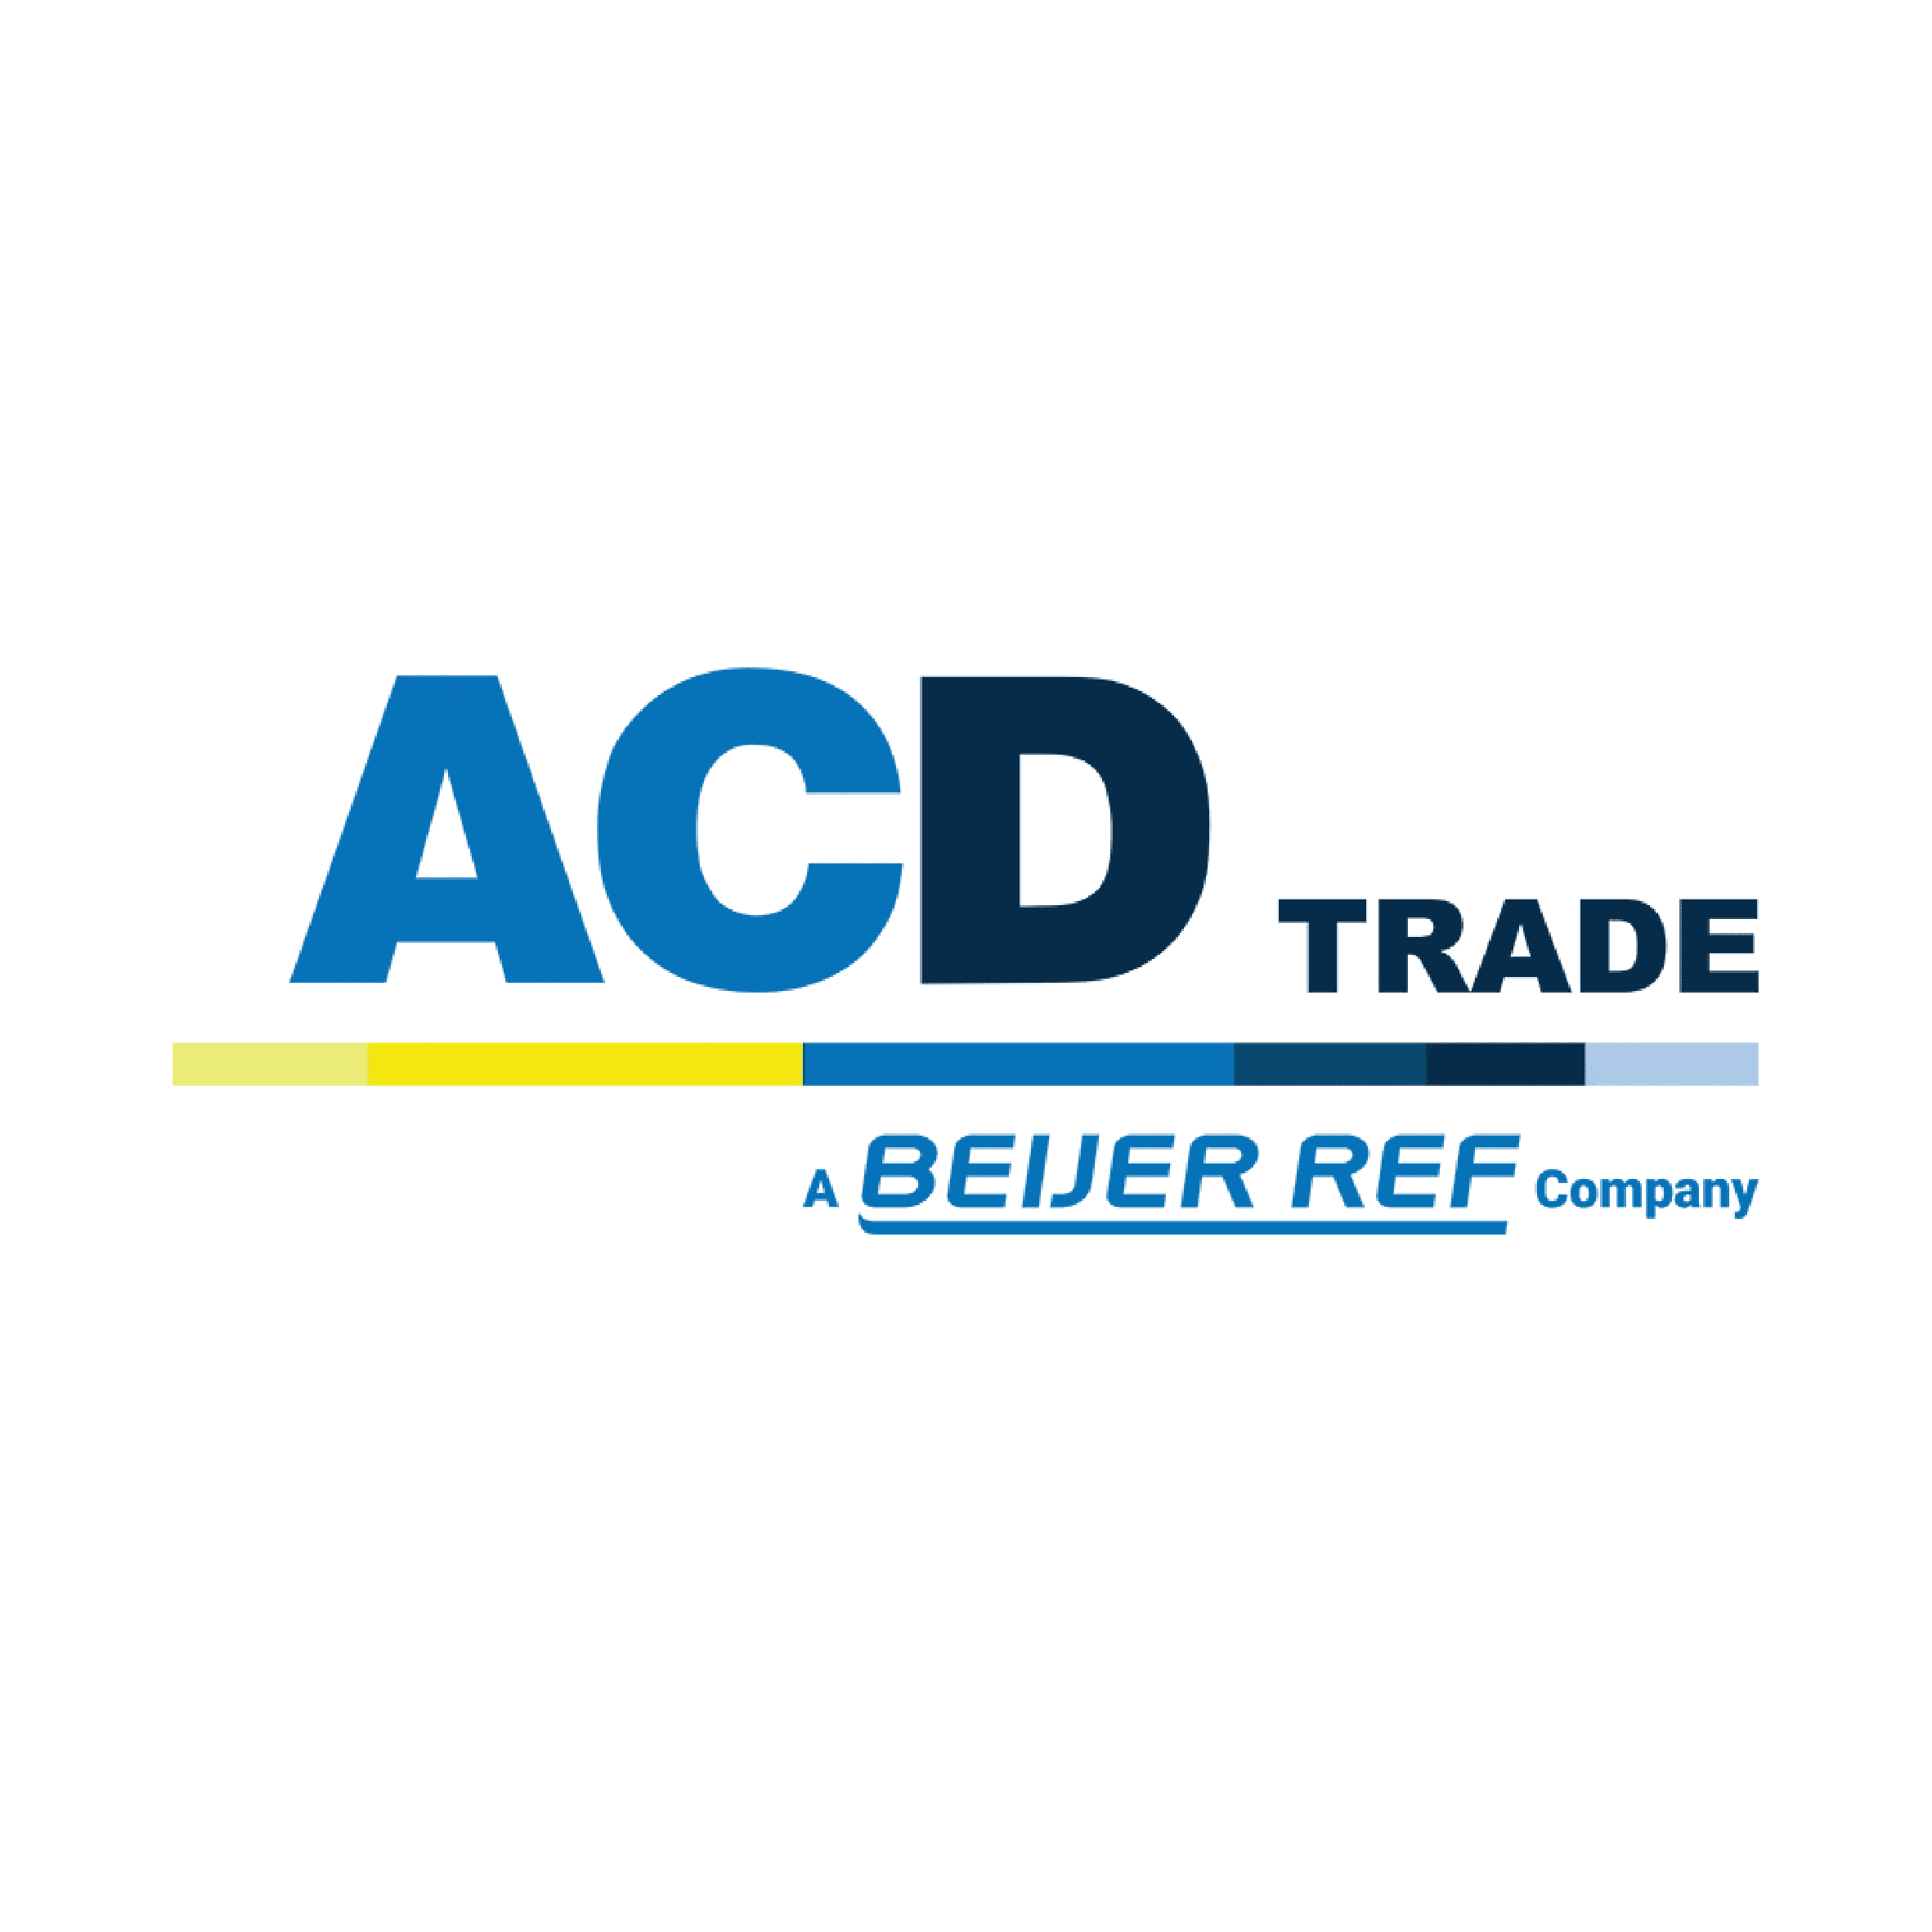 ACD Trade Logo